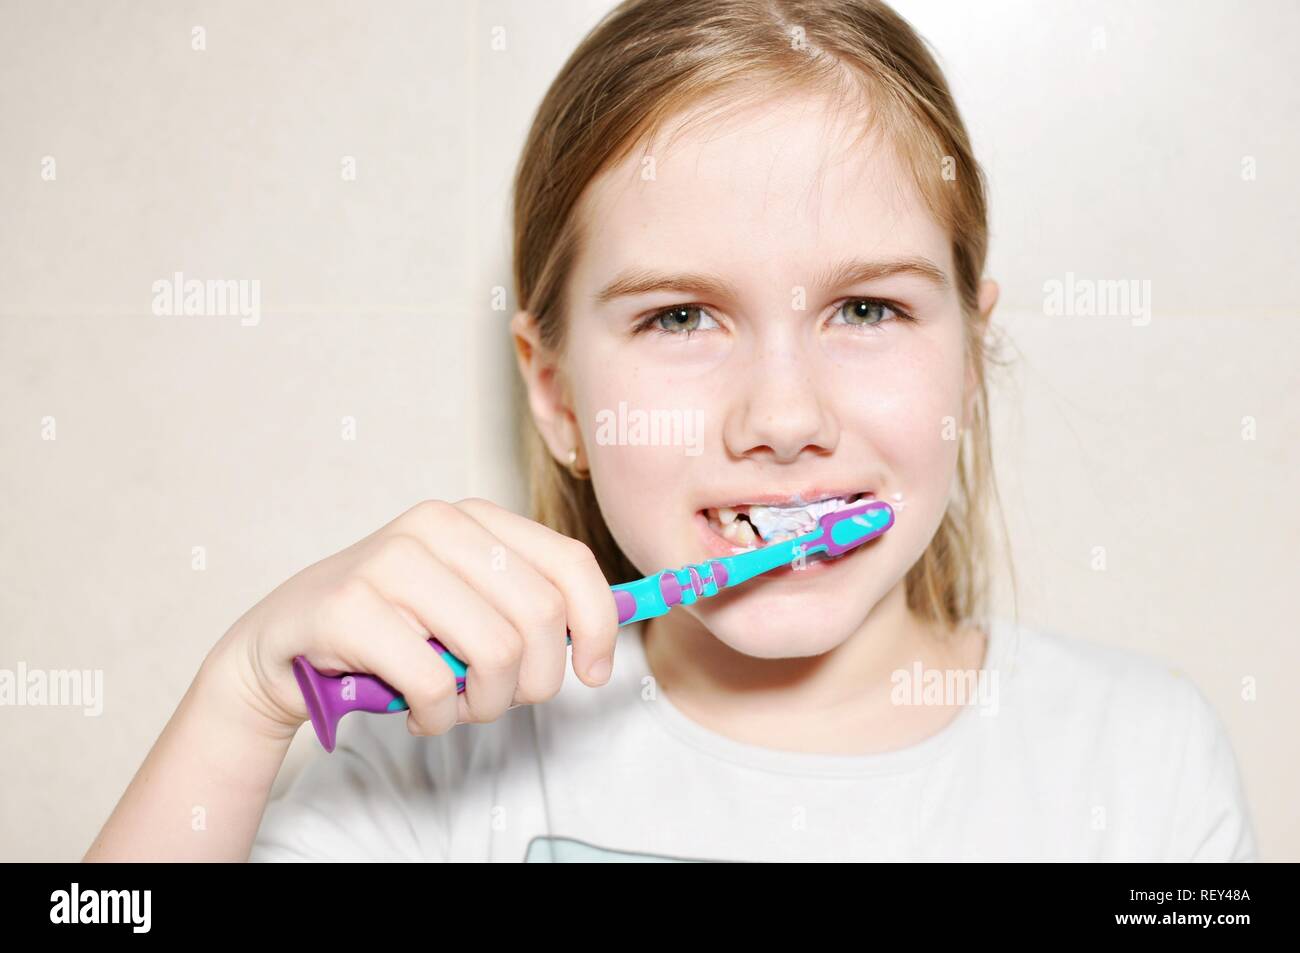 White caucasien enfant (Kid), fille, sourire et de laver ses dents avec une brosse à dents dans la salle de bains. Vue avant portrait. Copier du texte Banque D'Images